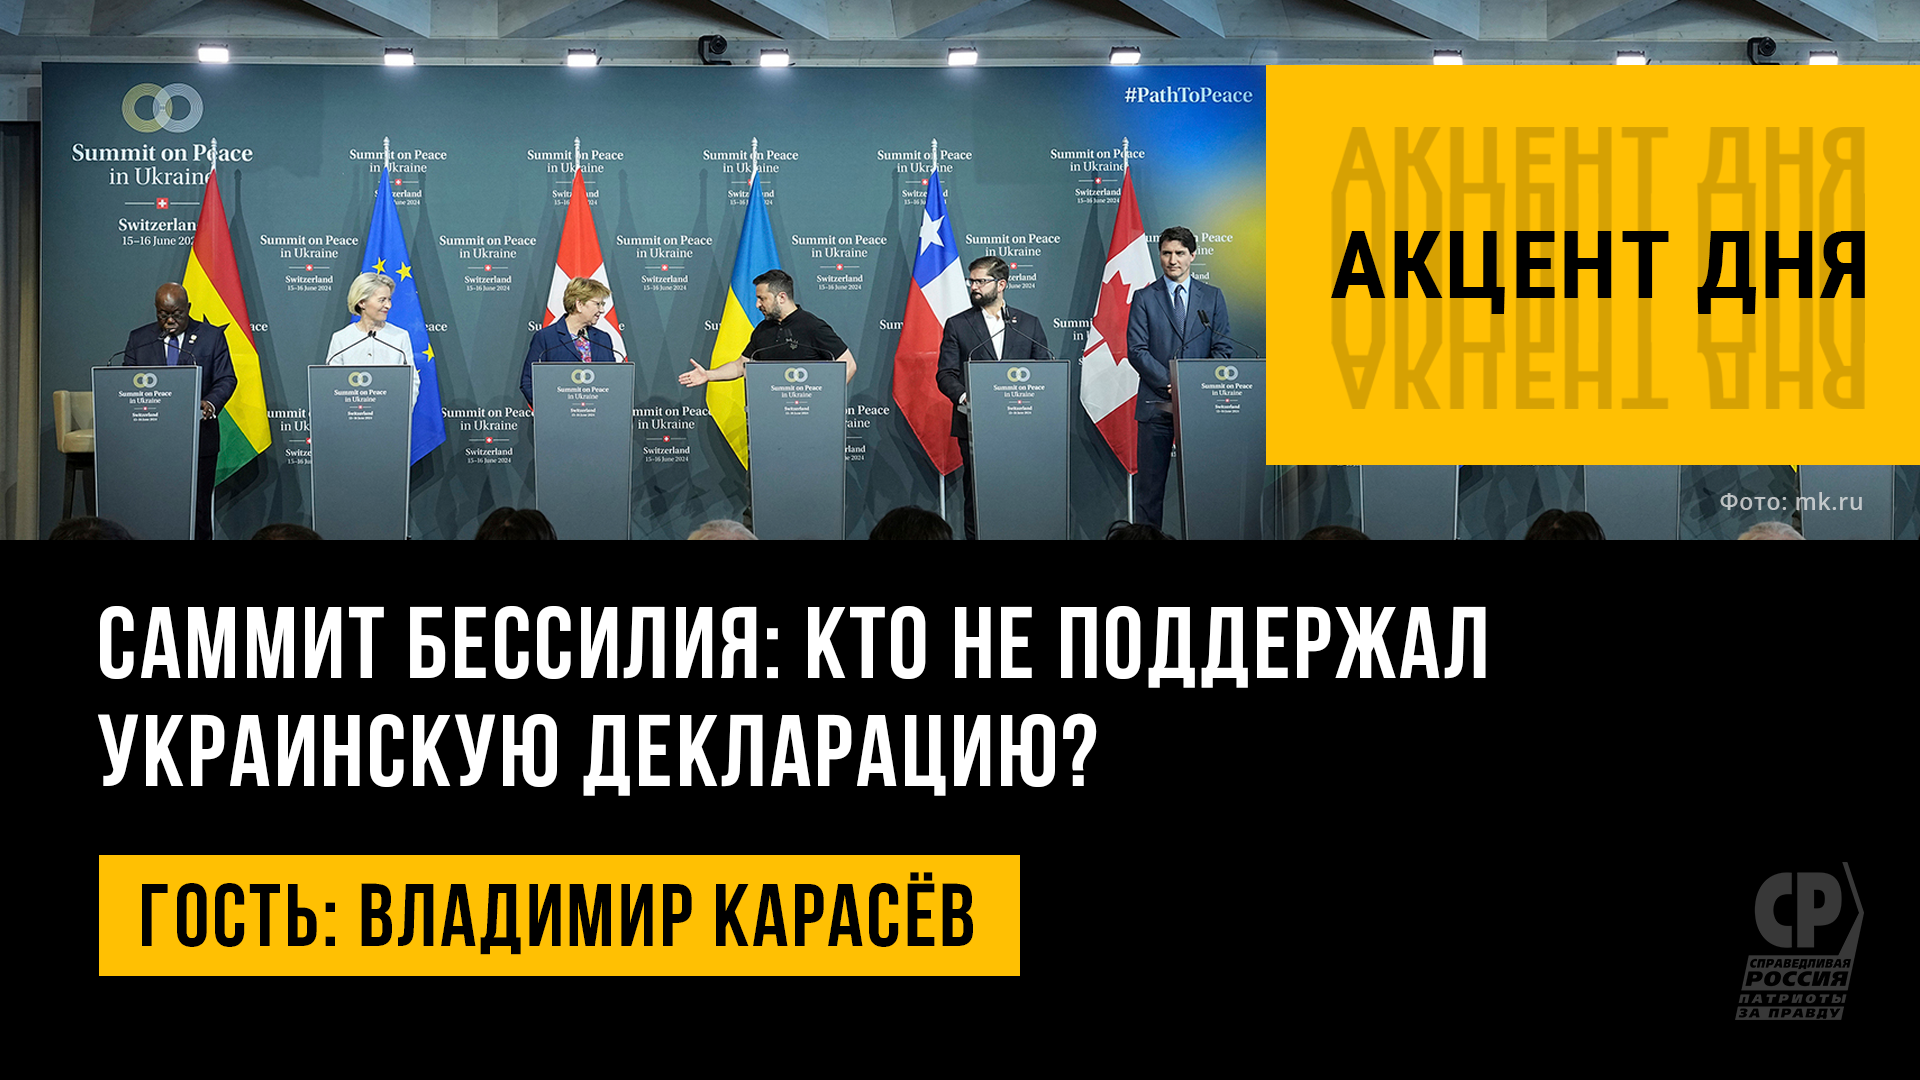 Саммит бессилия: кто не поддержал украинскую декларацию? Владимир Карасёв